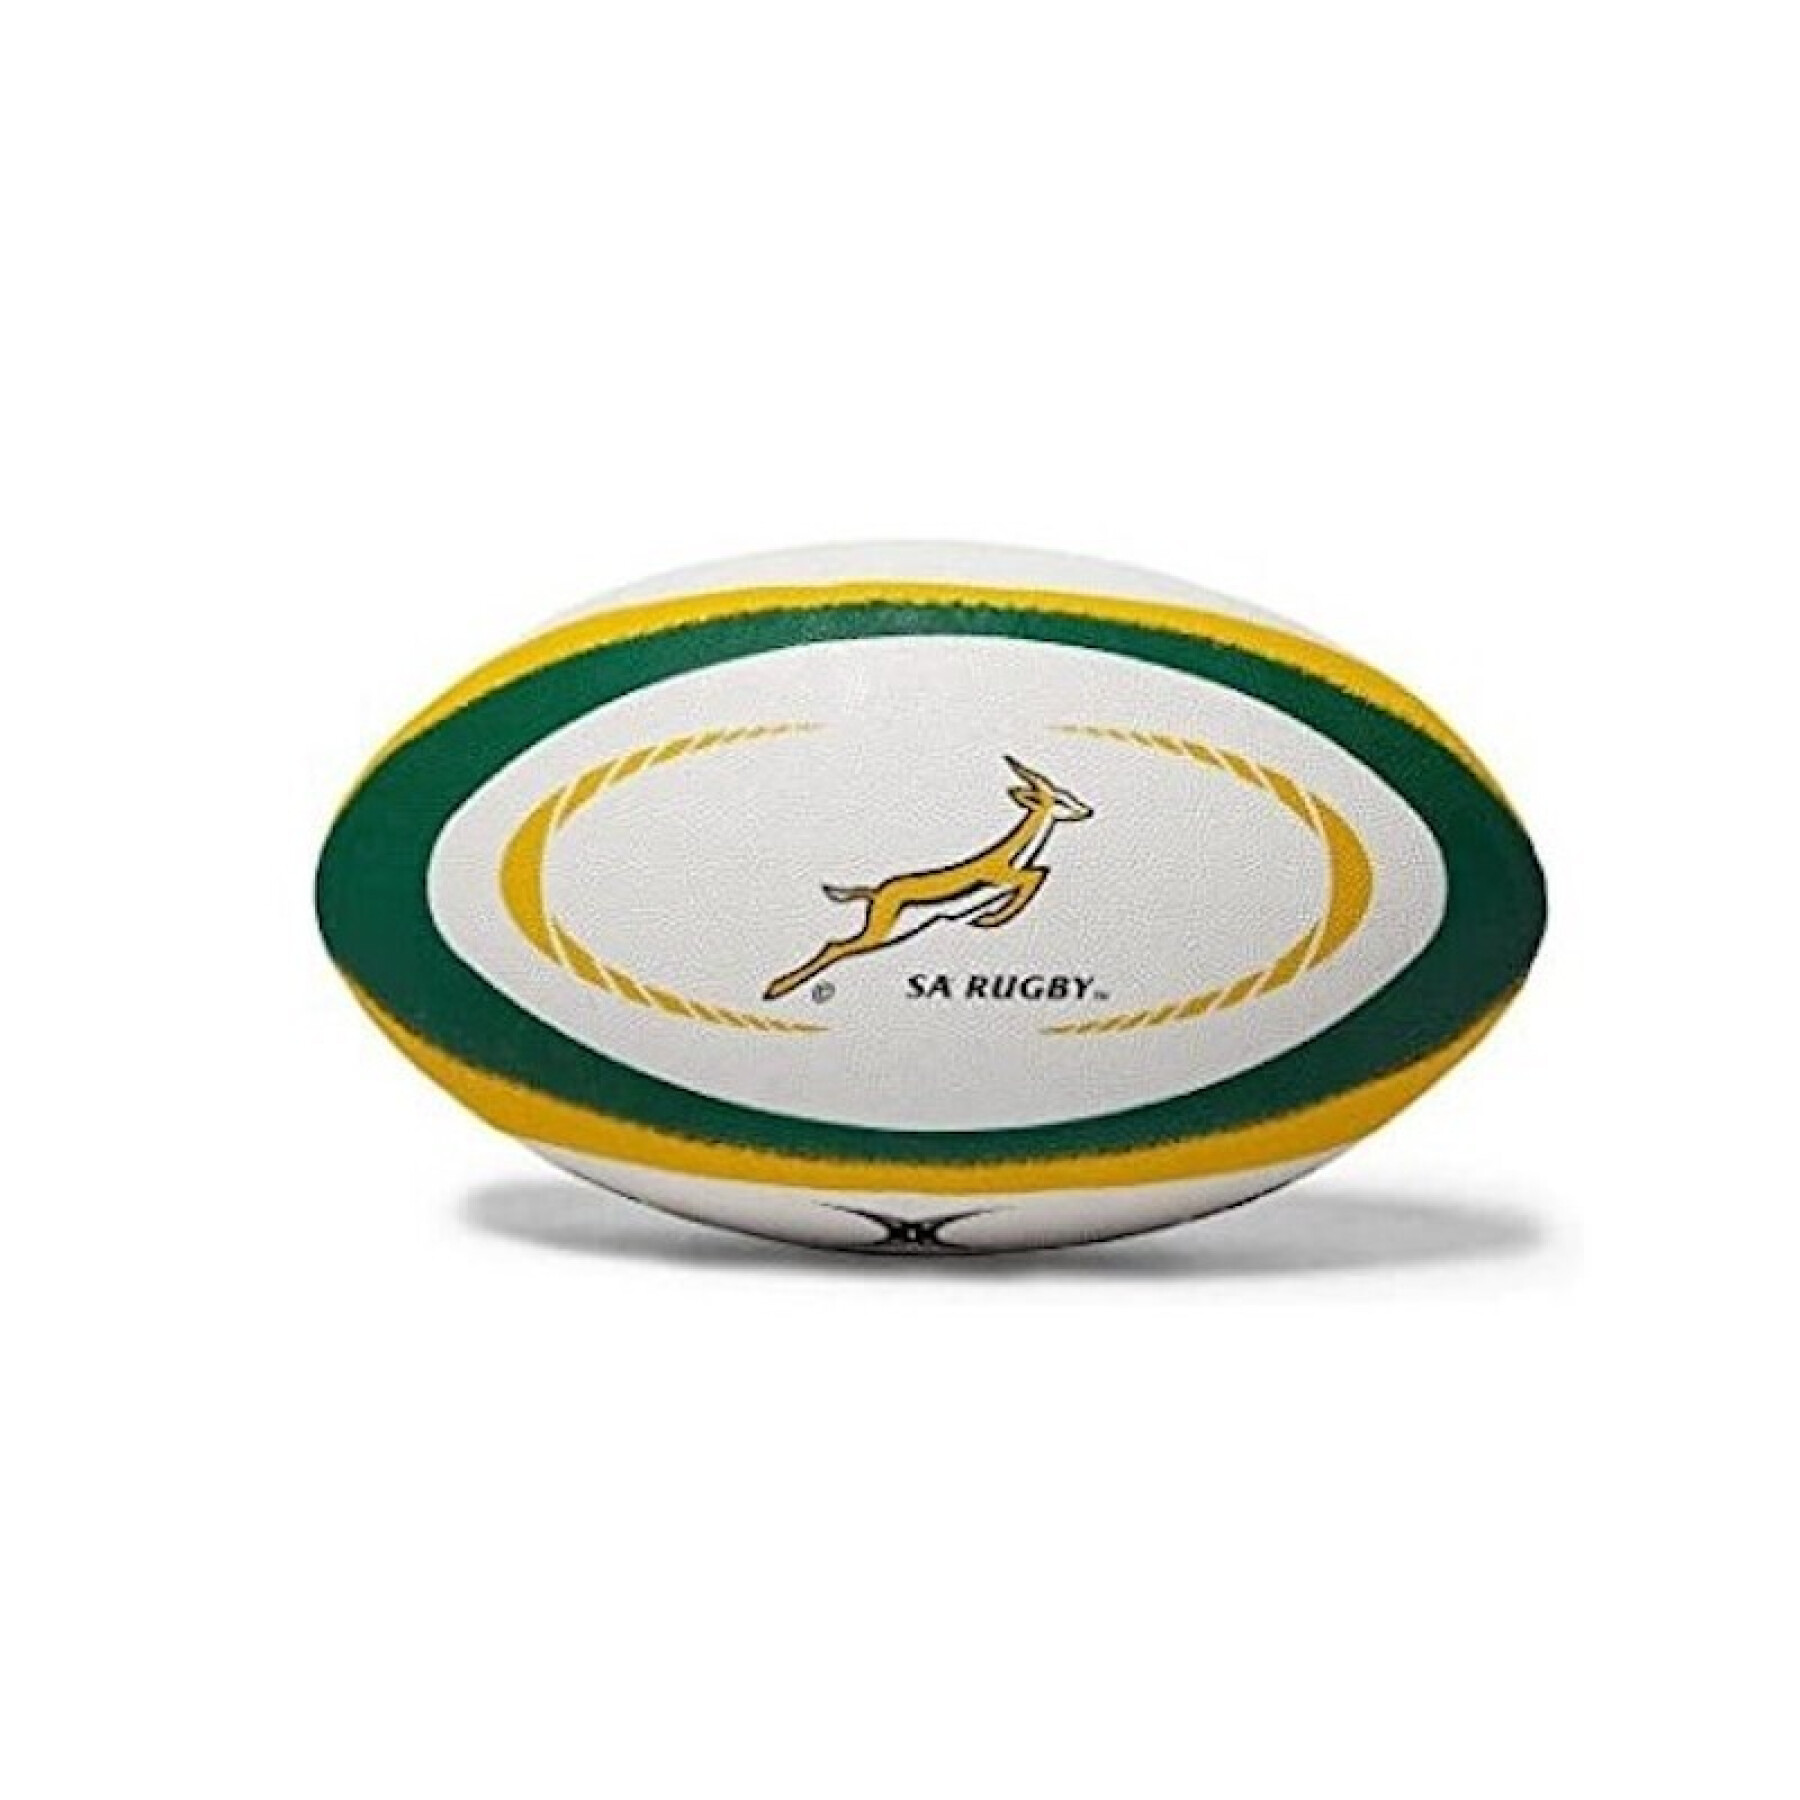 Nachbildung eines Rugbyballs Gilbert Südafrika (Größe 5)